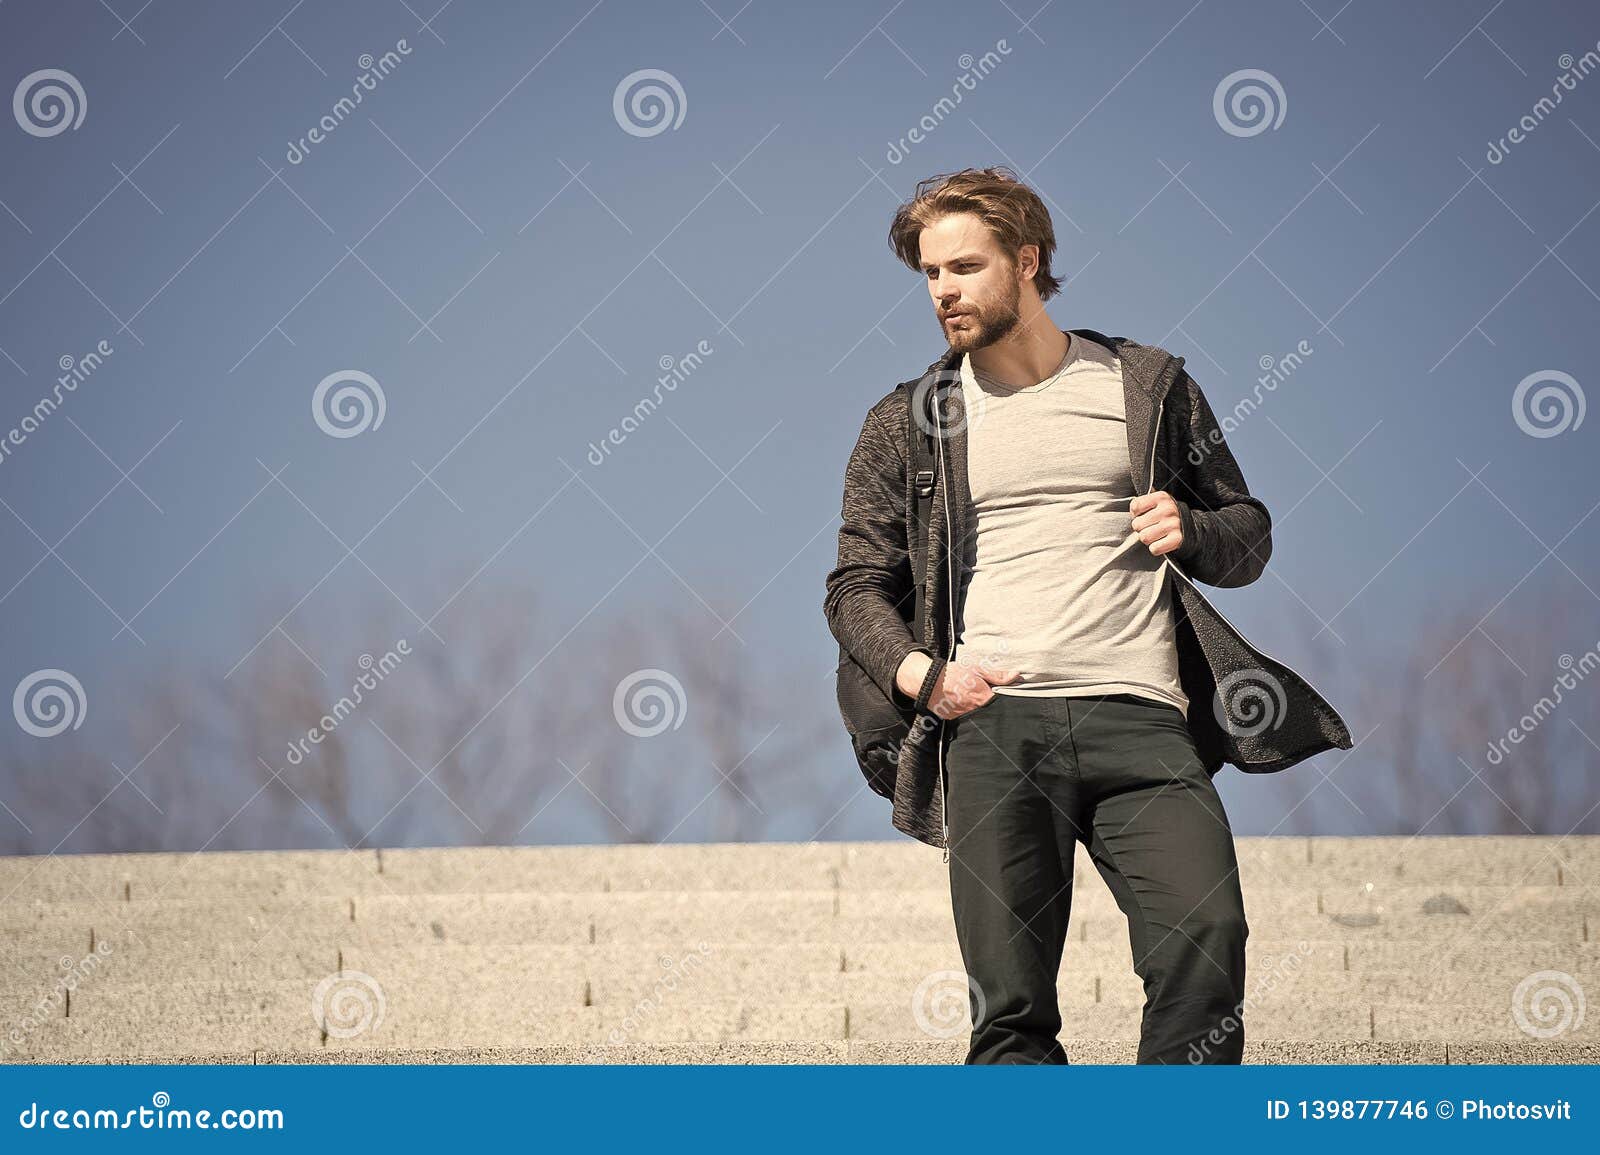 One More Step. Man Handsome Guy Enjoy Morning Walk Blue Sky